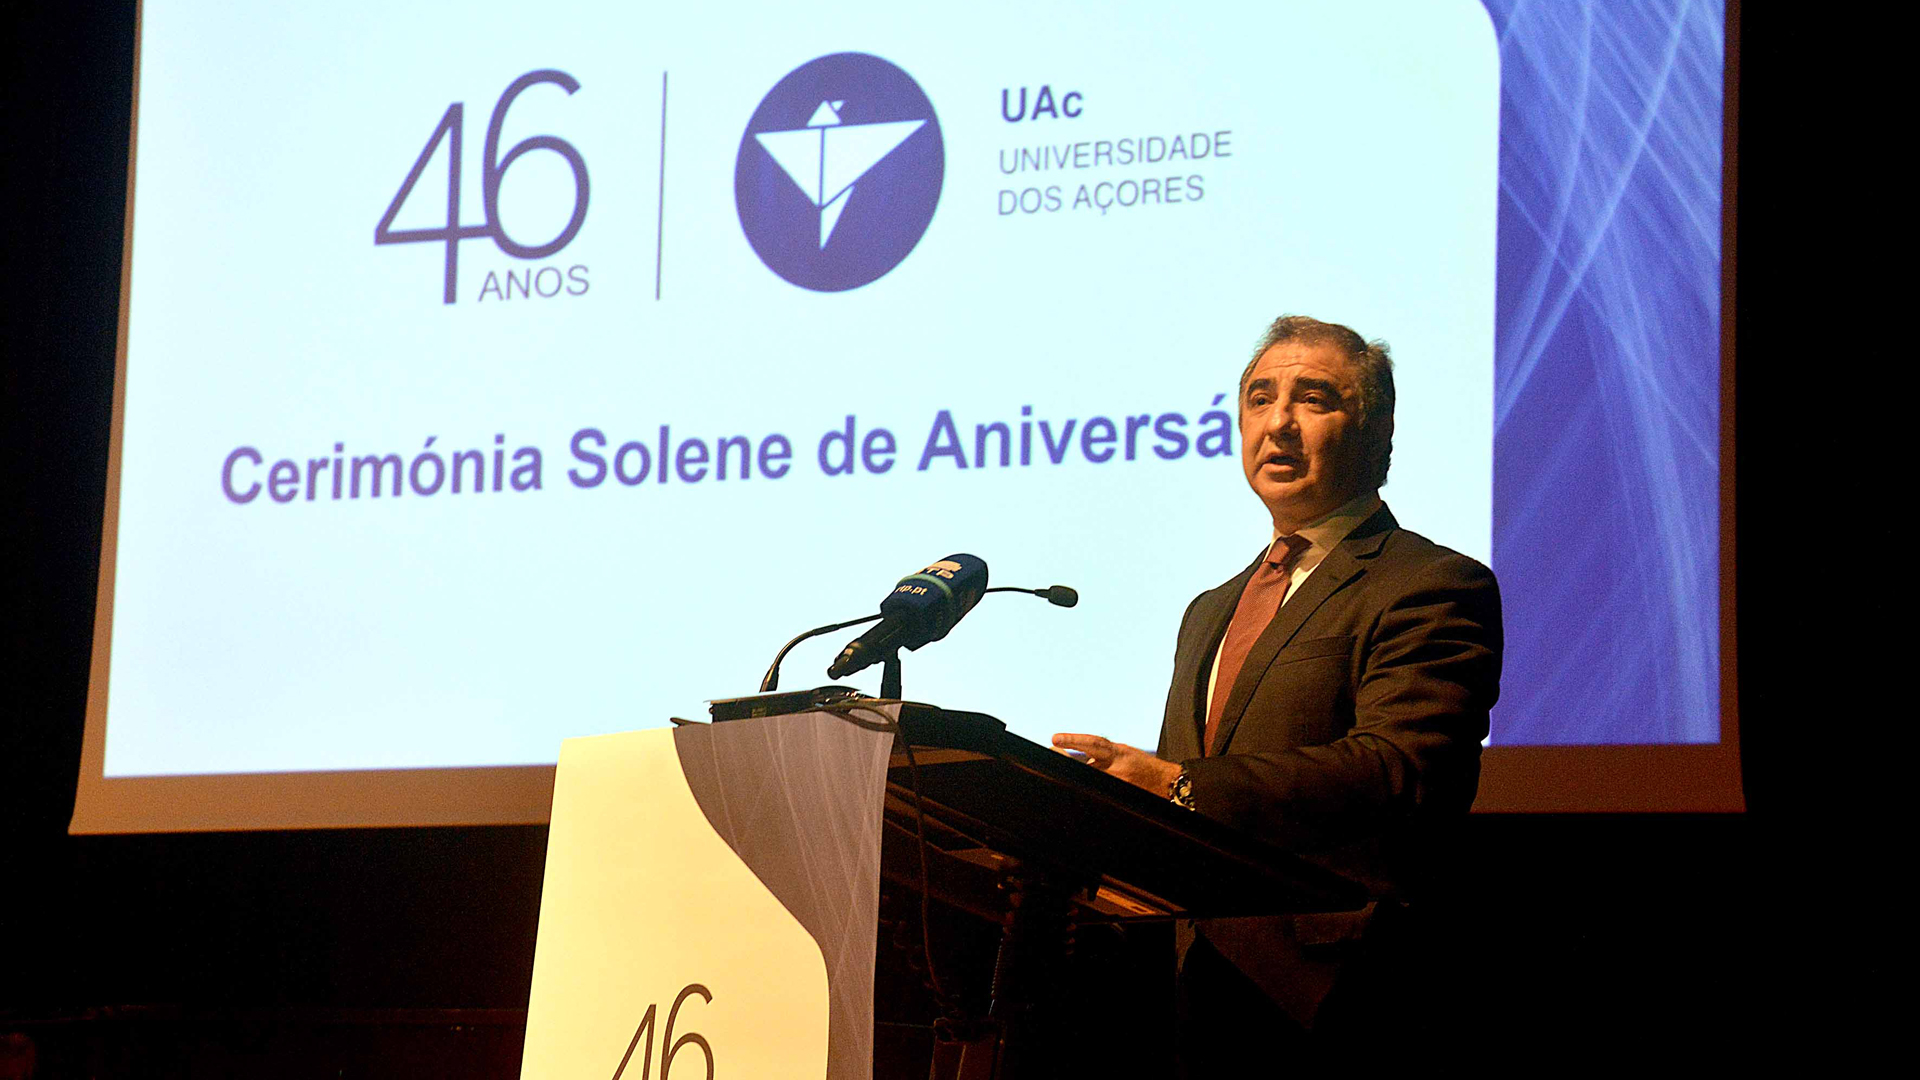 Cerimónia comemorativa do 46.º aniversário da Universidade dos Açores